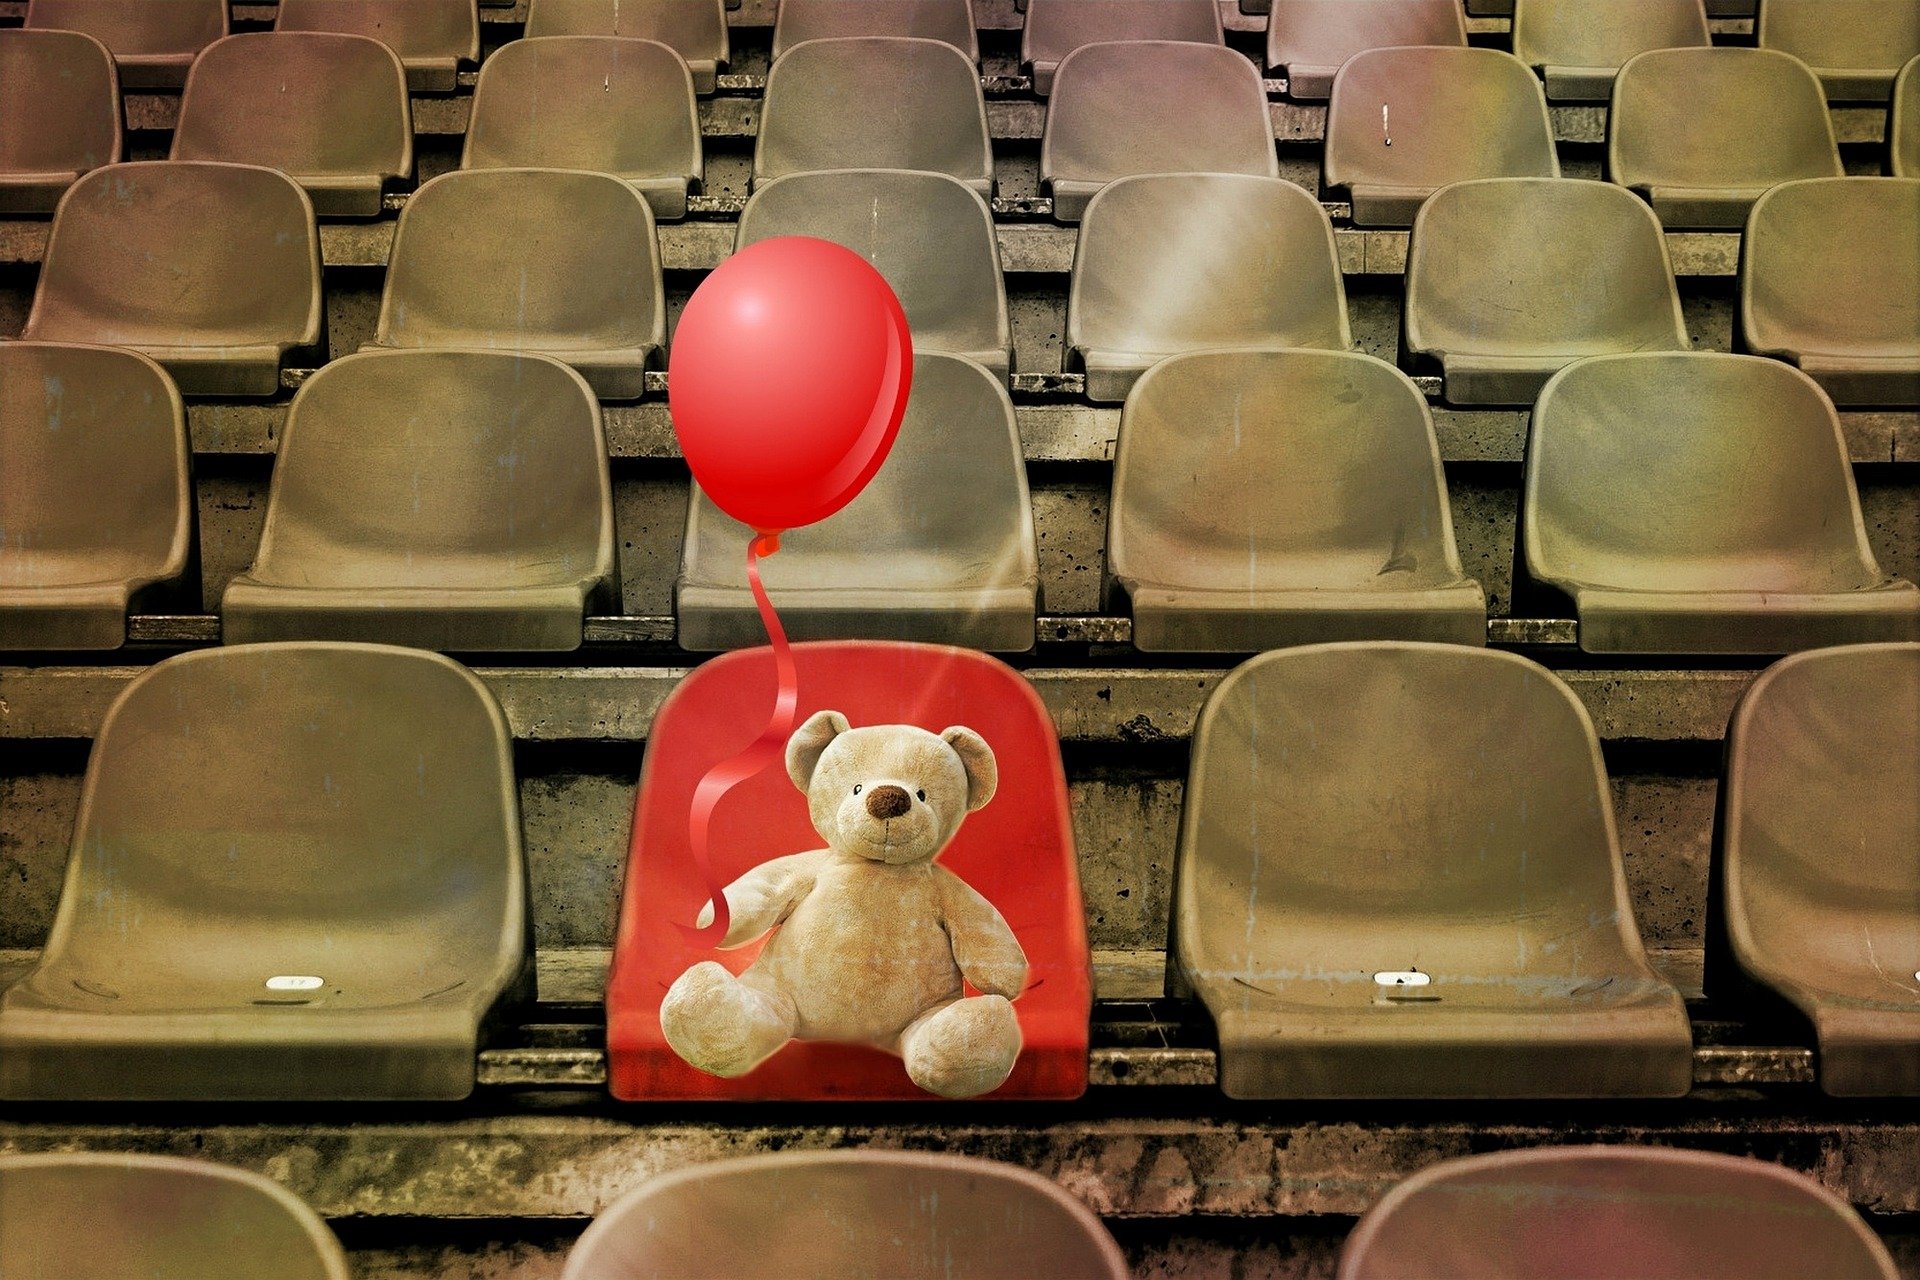 sedie di una tribuna vuote e marroni, solo una rossa occupata da un orsacchiotto che tiene in mano un palloncino rosso